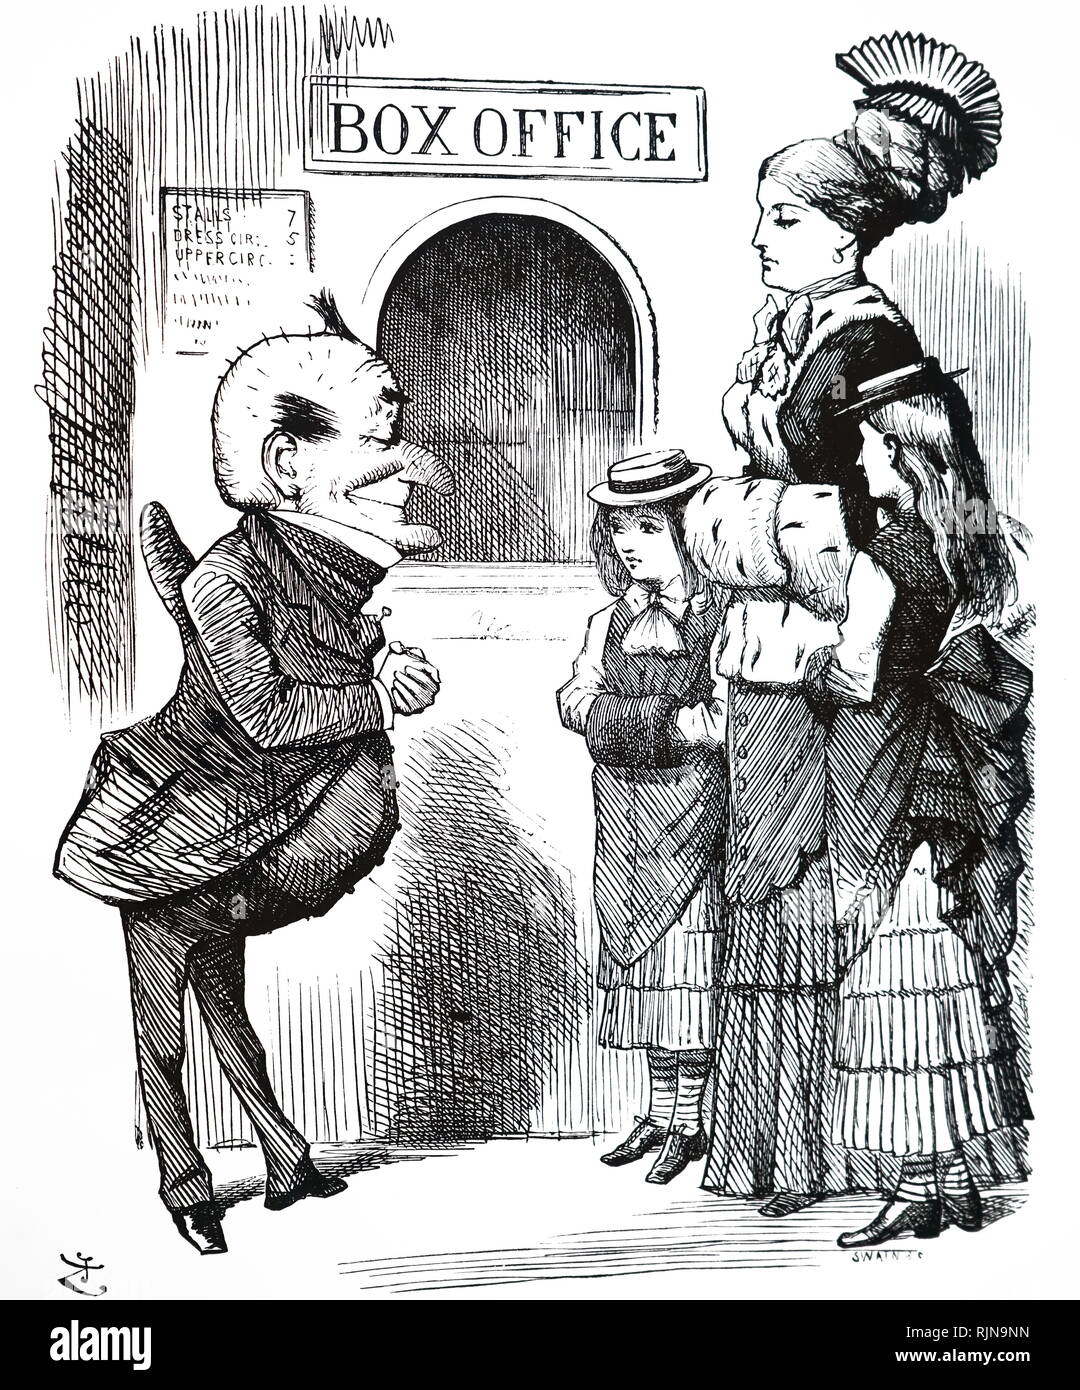 Eine politische Karikatur kommentierte die Zensur von spielt durchgesetzt von Lord Chamberlain; Illustriert von John Tenniel (1820-1914). Vom 19. Jahrhundert Stockfoto